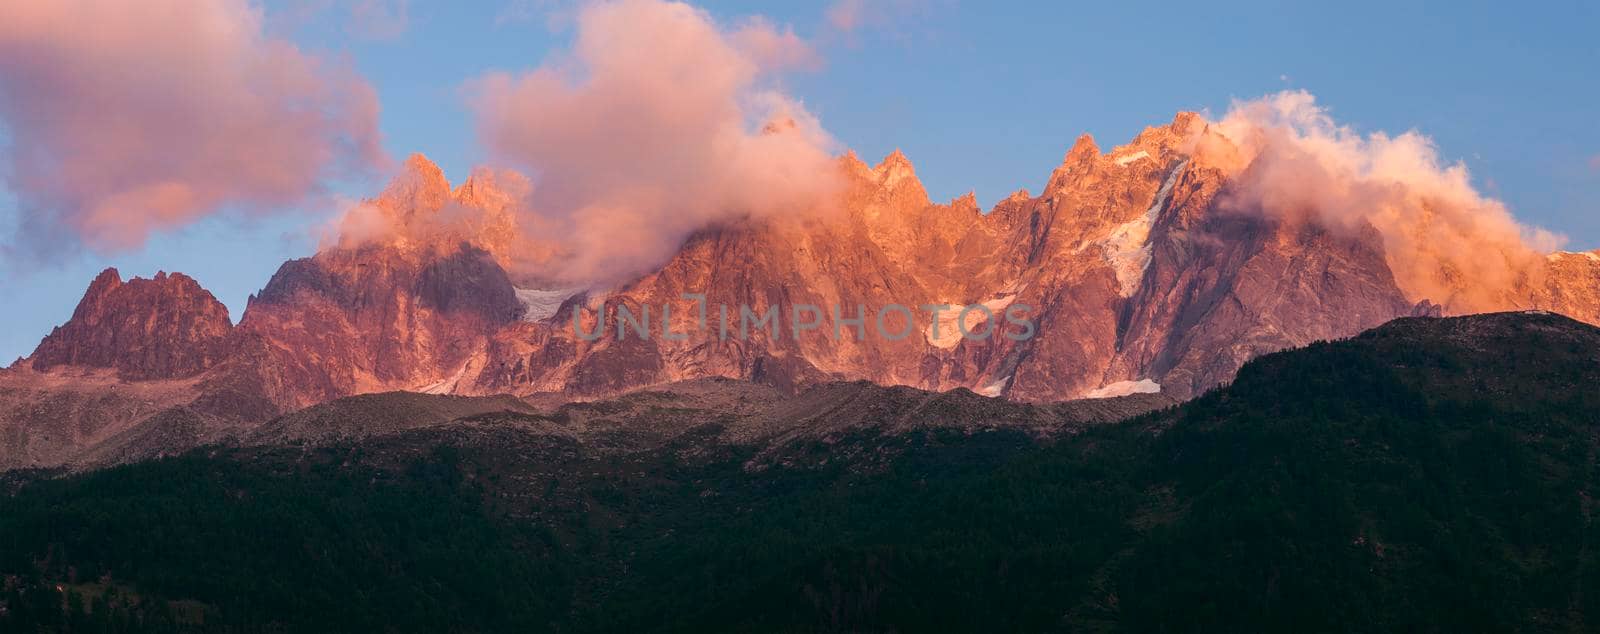 Alps peaks in Chamonix area by benkrut